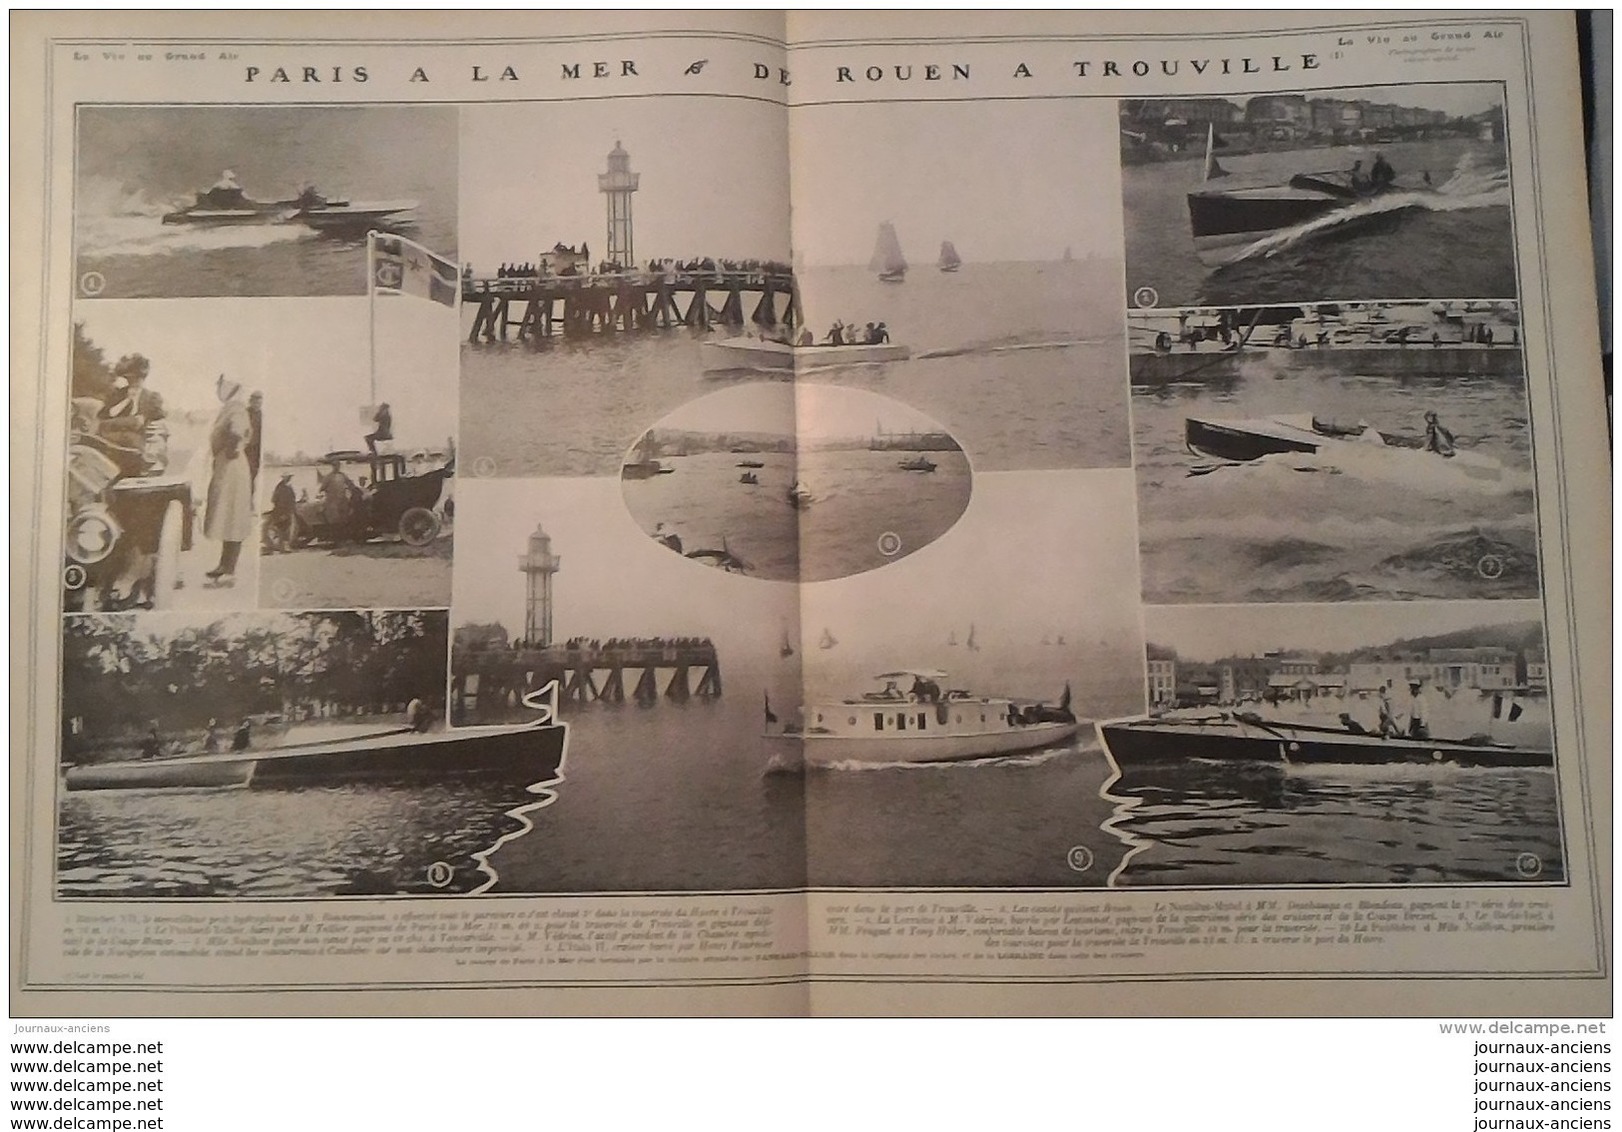 1907 CIRCUIT DES ARDENNES - AUTOMOBILE CRITERIUM DE LA PRESSE ROUEN TROUVILLE - TOUR DE FRANCE - PEKIN PARIS